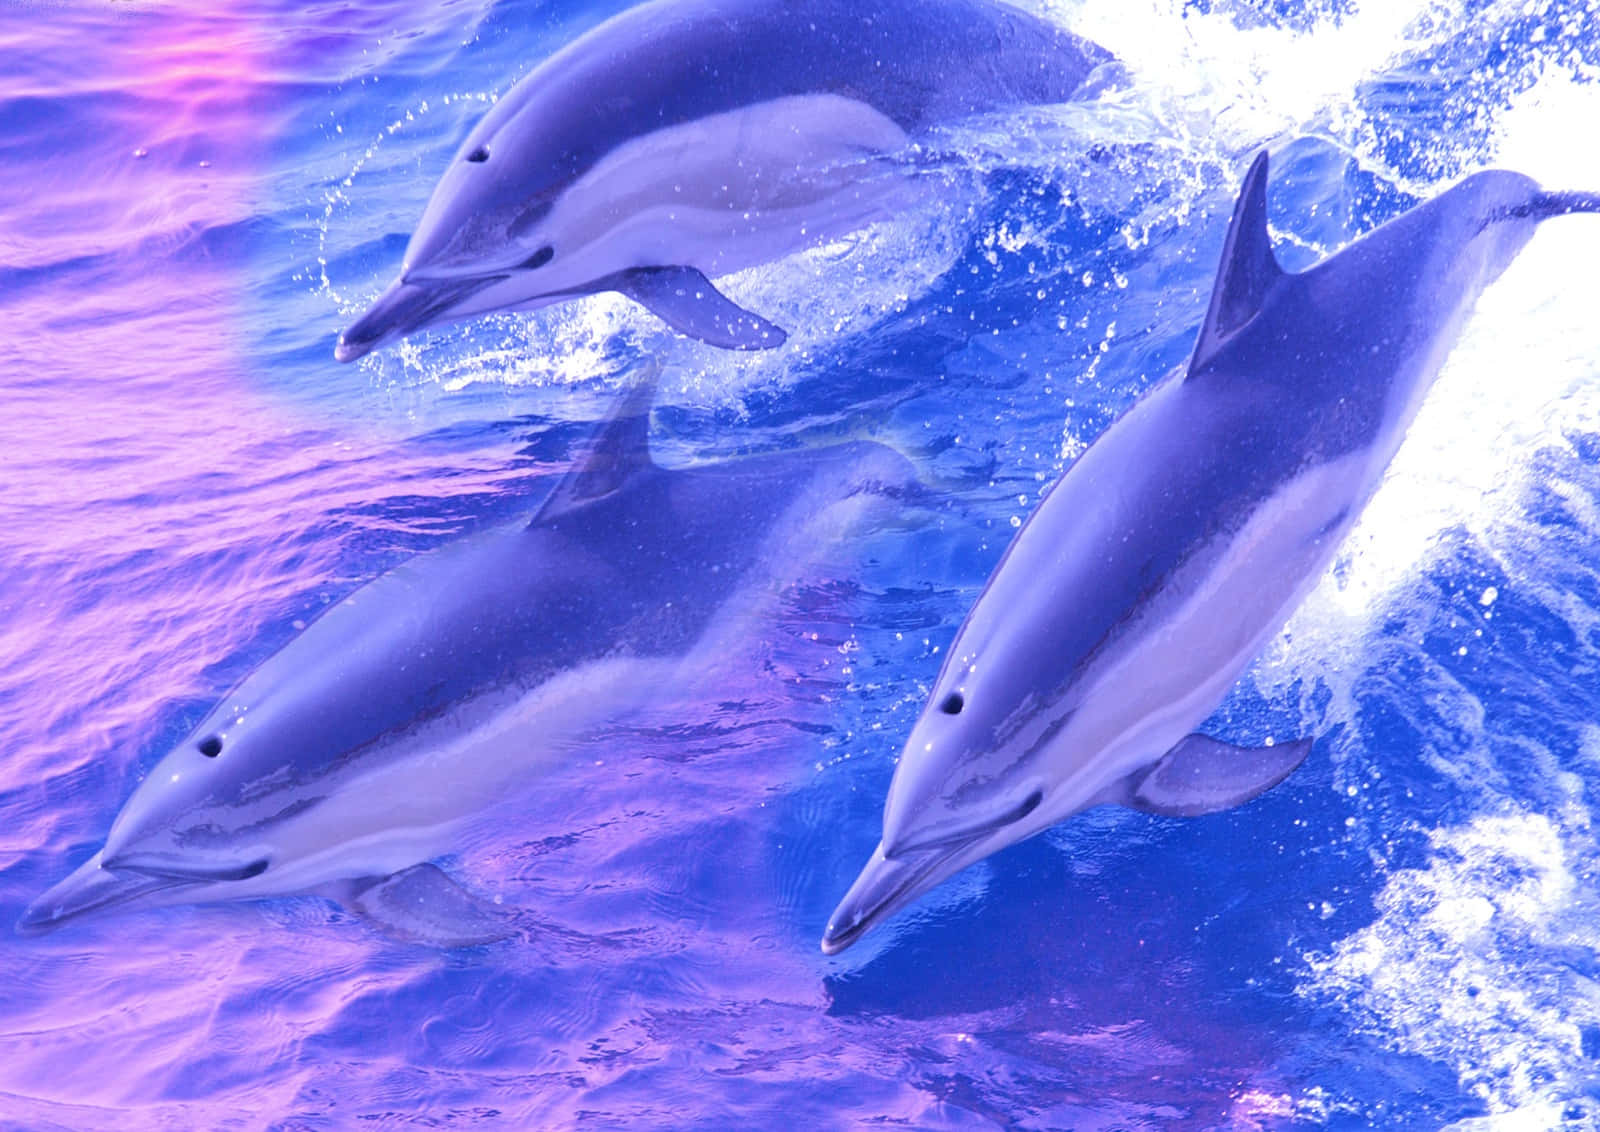 Labellezza Della Natura: Delfini Che Giocano Nel Mare